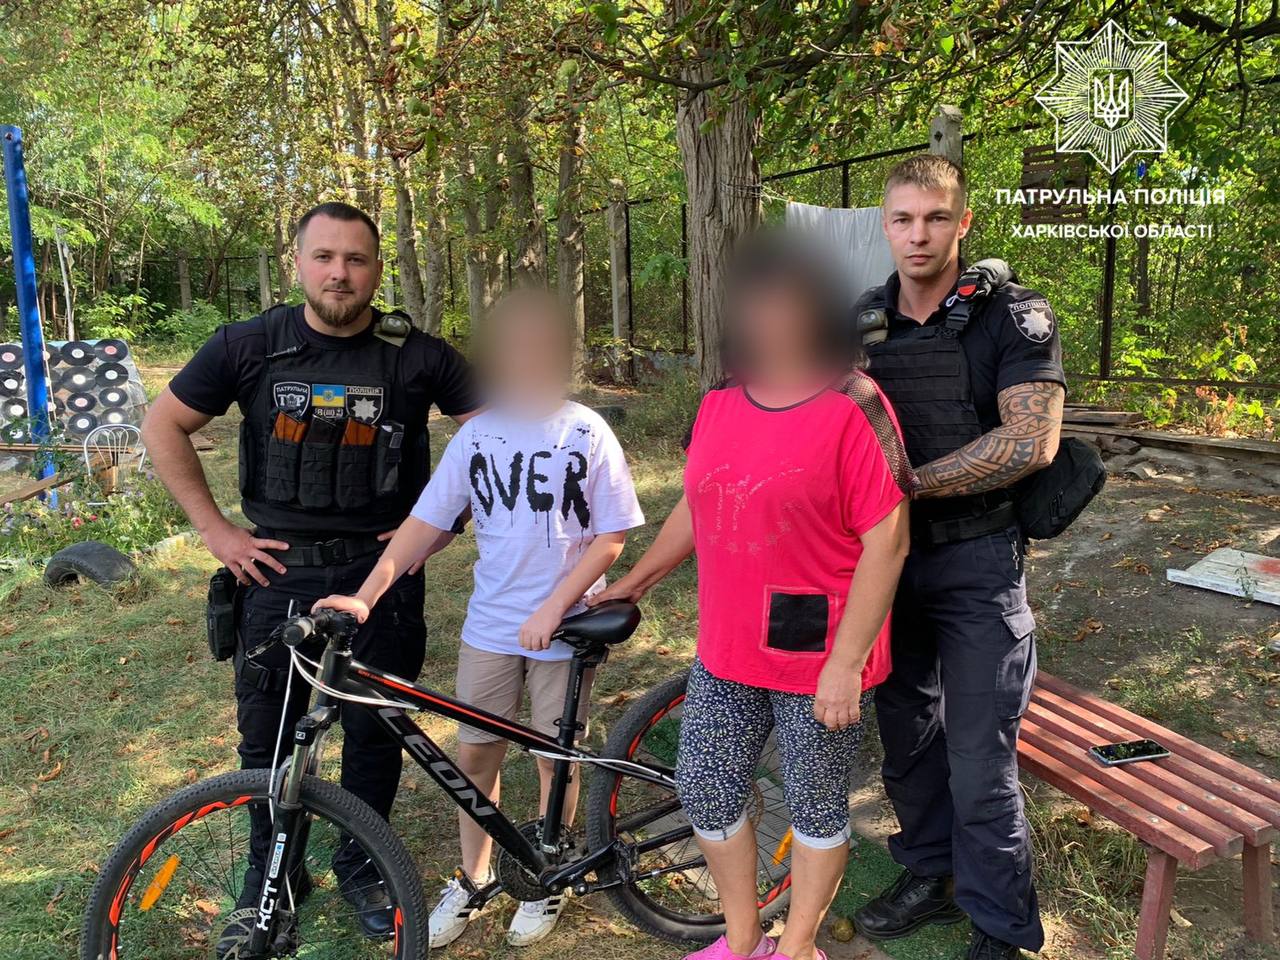 Харківські ТОРівці затримали чоловіка, який відібрав велосипед у малолітньої дитини